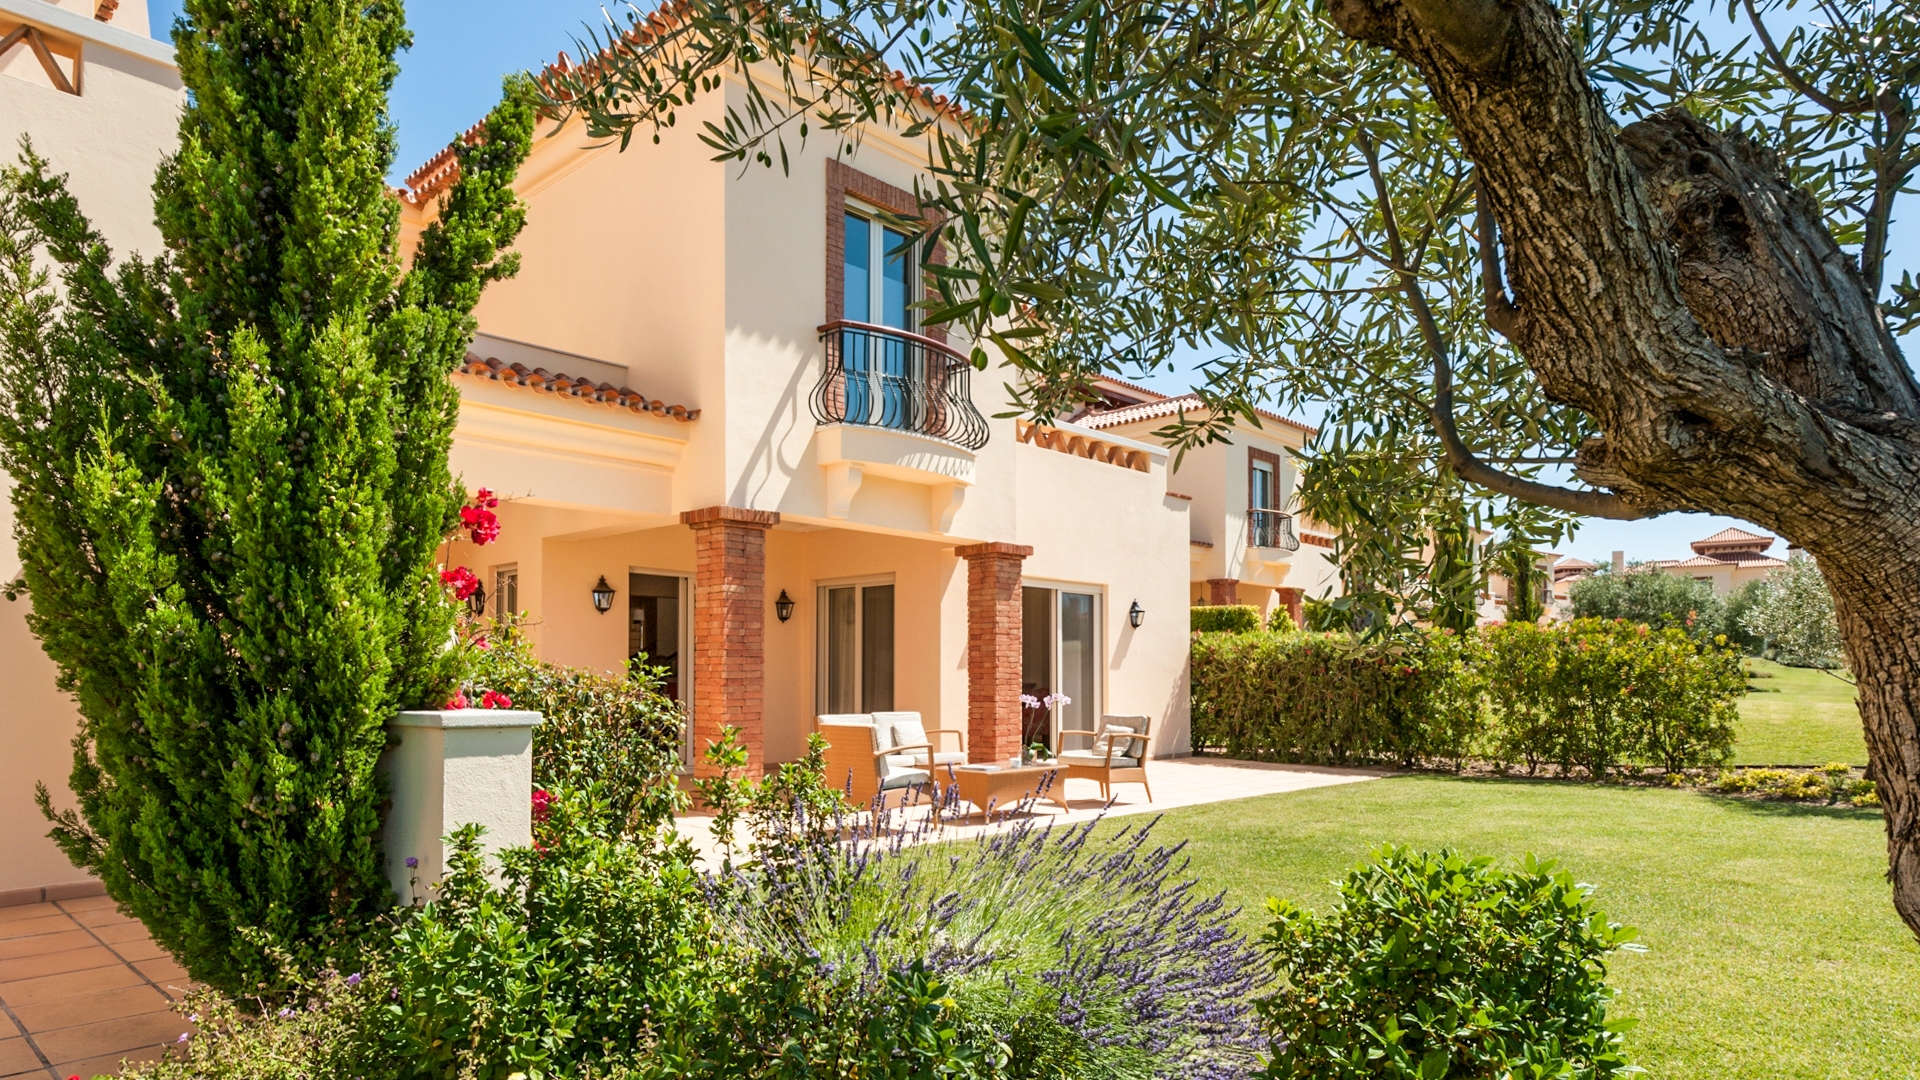 Verschiedene miteinander verbundene Villen auf einem der schönsten Golfplätze in der Algarve | TV1589 Qualitativ hochwertige Immobilien, verbunden mit einer ruhigen und unverbaubaren Aussicht auf die umliegende Landschaft. Dies sind wirklich erstklassige Villen, die sowohl als hervorragende Investition in die Vermietung als auch als permanenter Wohnsitz geeignet sind, gelegen auf dem No. 1 Golfplatz in der Ost Algarve.